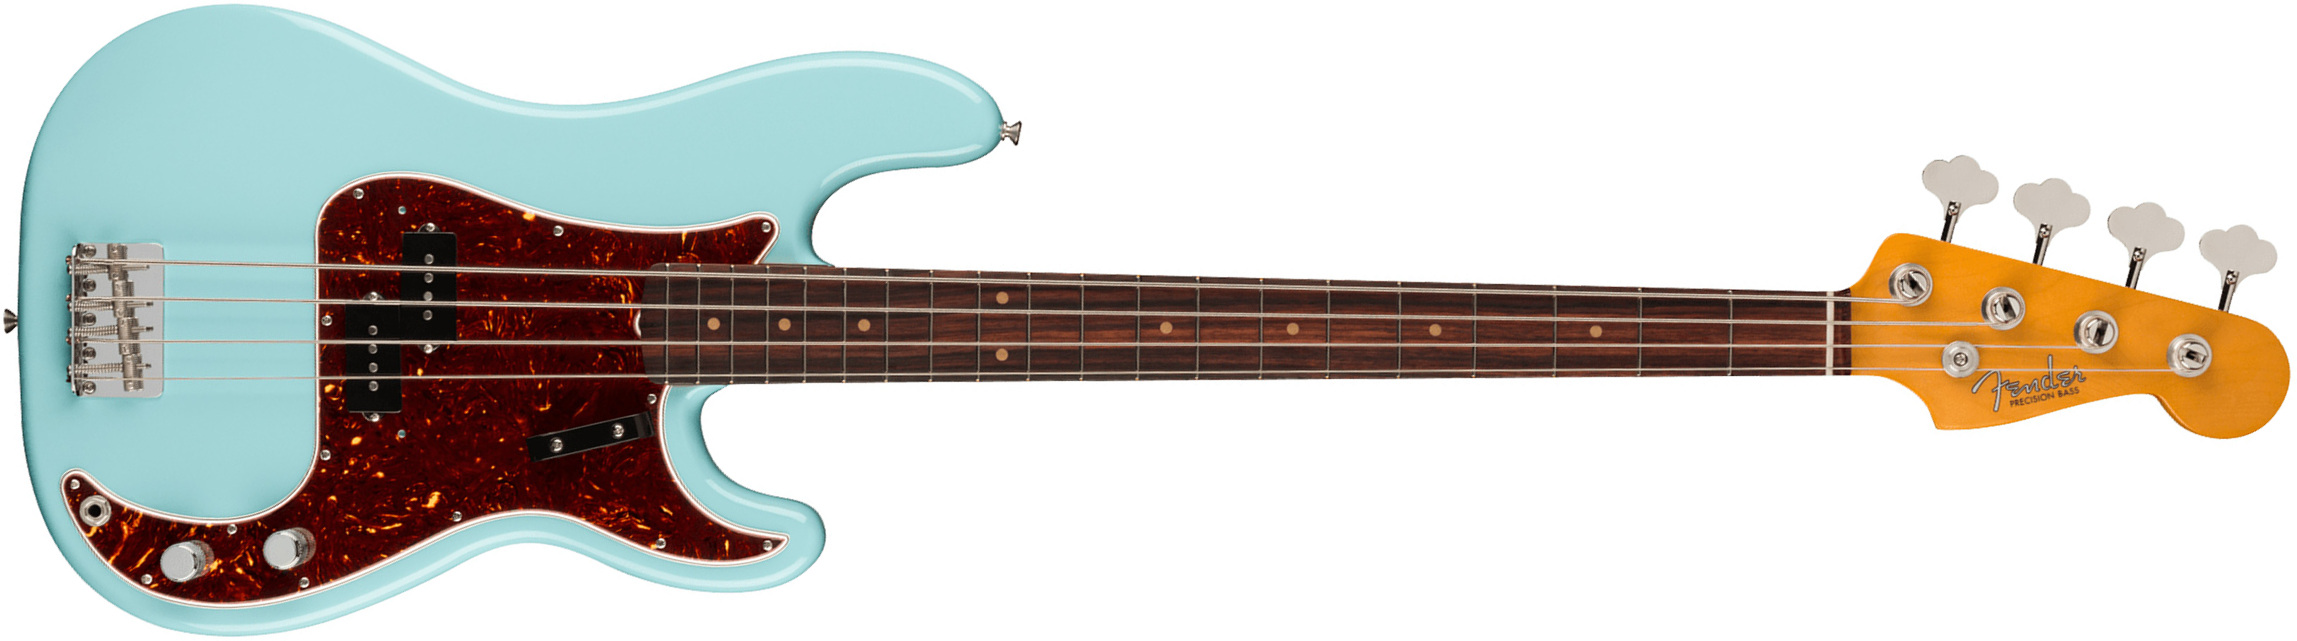 Fender Precision Bass 1960 American Vintage Ii Usa Rw - Daphne Blue - Bajo eléctrico de cuerpo sólido - Main picture